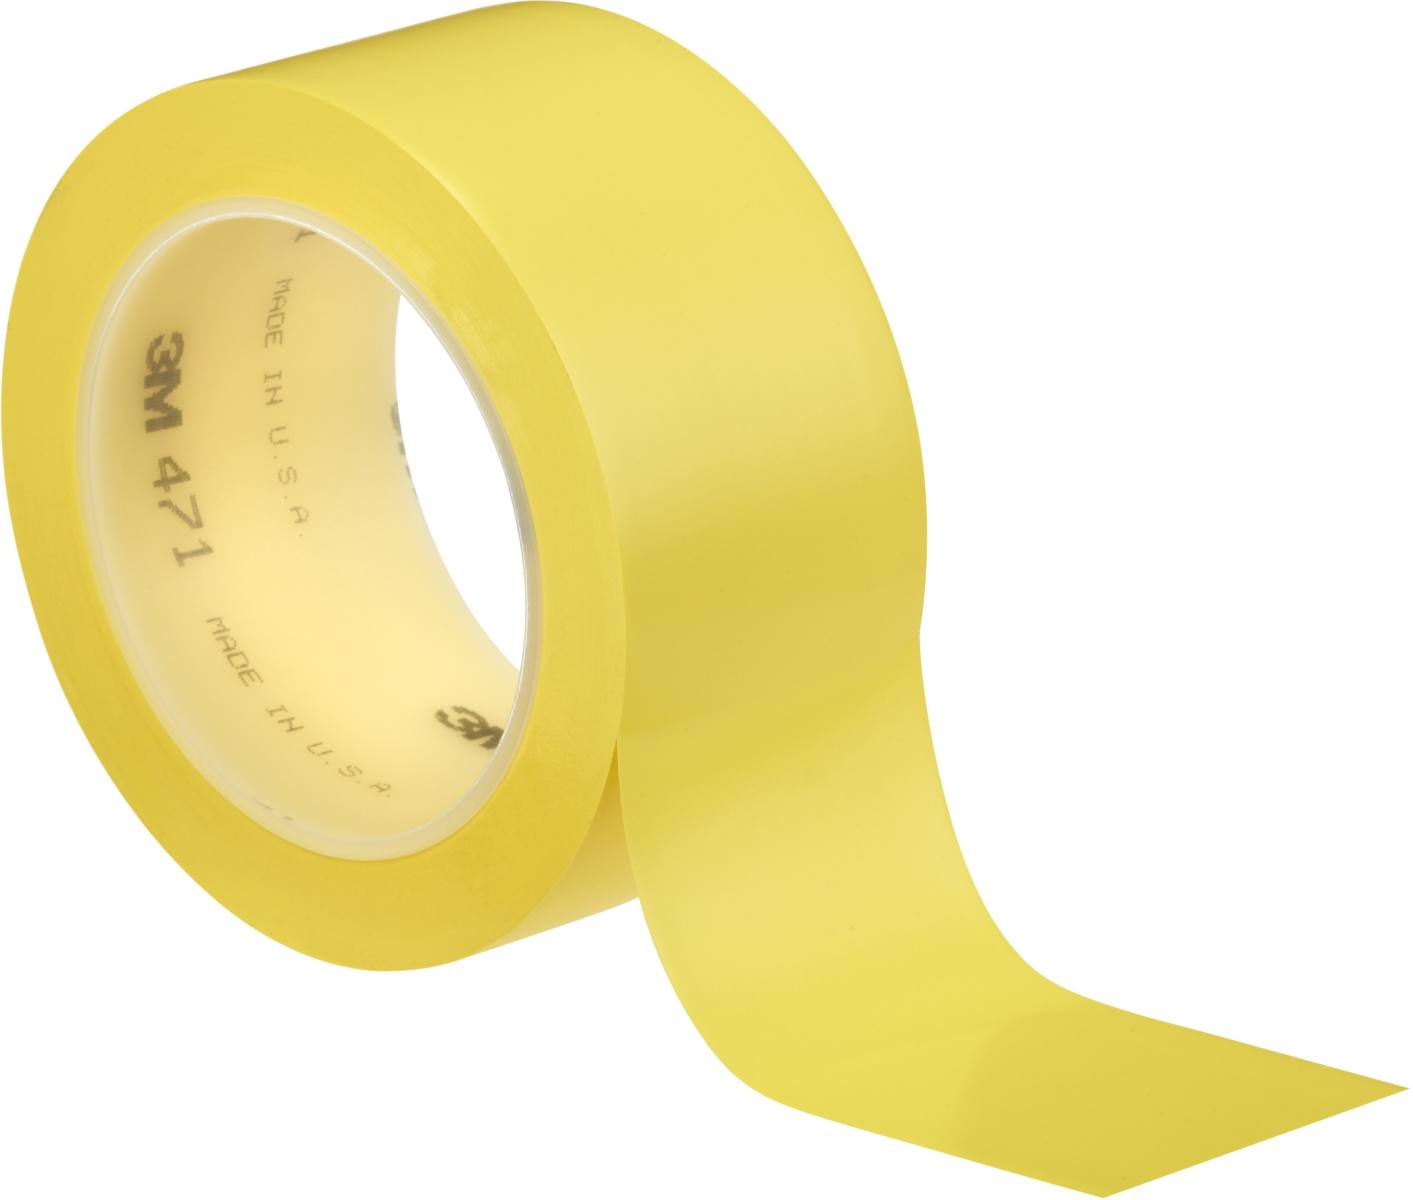 Nastro adesivo 3M in PVC morbido 471 F, giallo, 50 mm x 33 m, 0,13 mm, confezionato singolarmente e in modo pratico